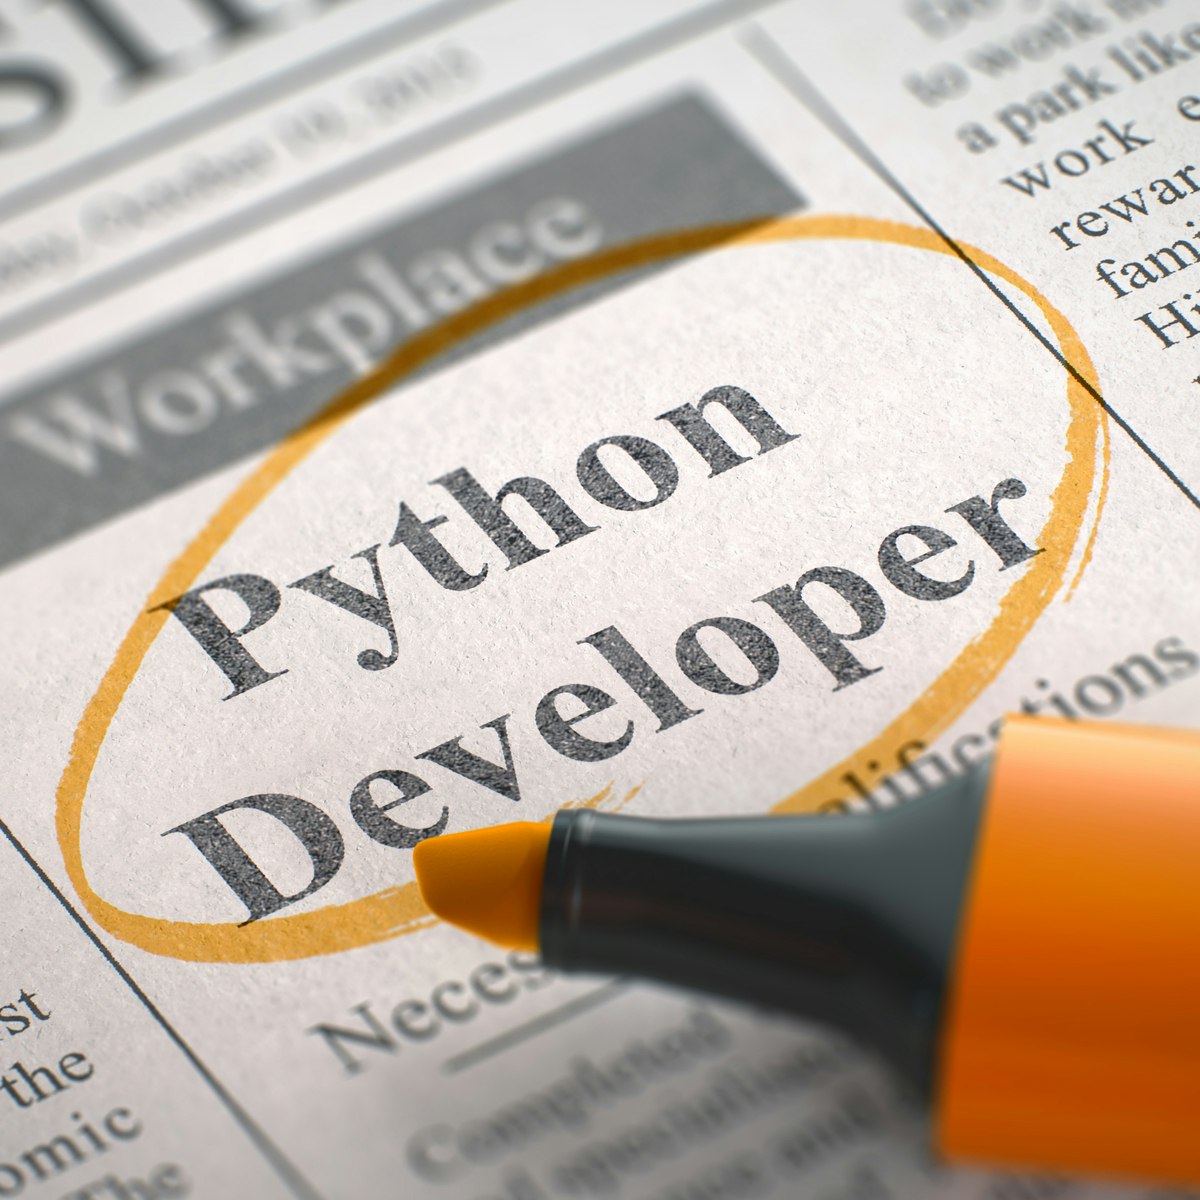 Python Programming Essentials